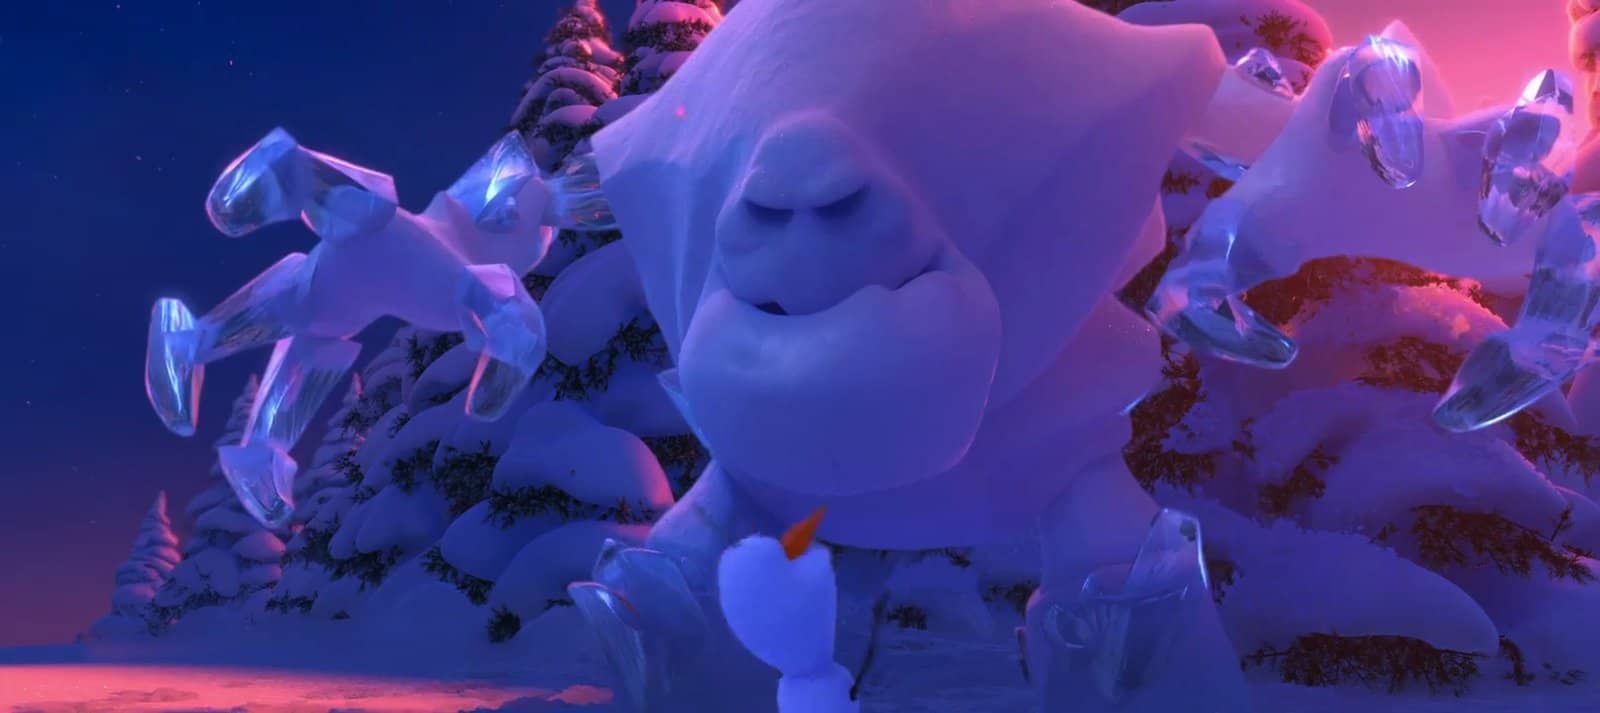 Marshmallow-frozen